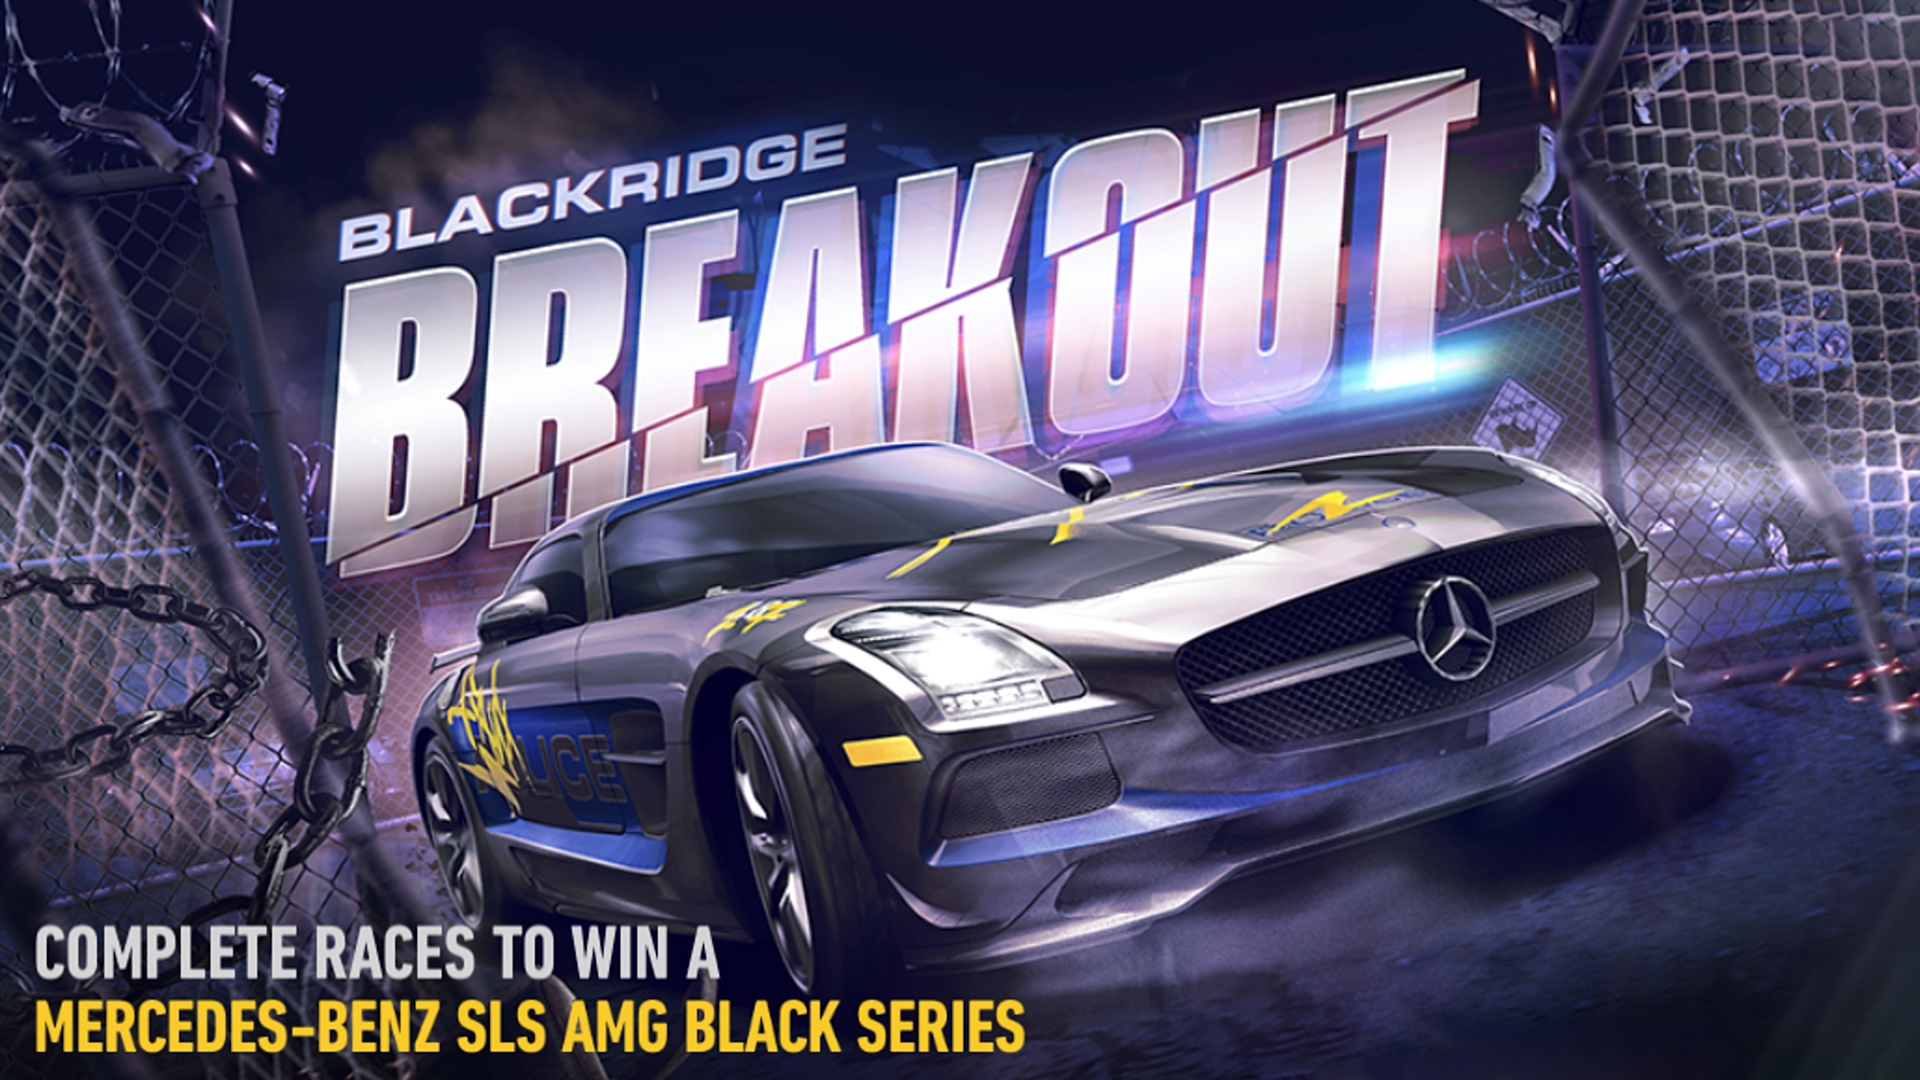 Mercedes-Benz SLS AMG Black Series BLACKRIDGE BREAKOUT NFS No Limits FULL EVENT